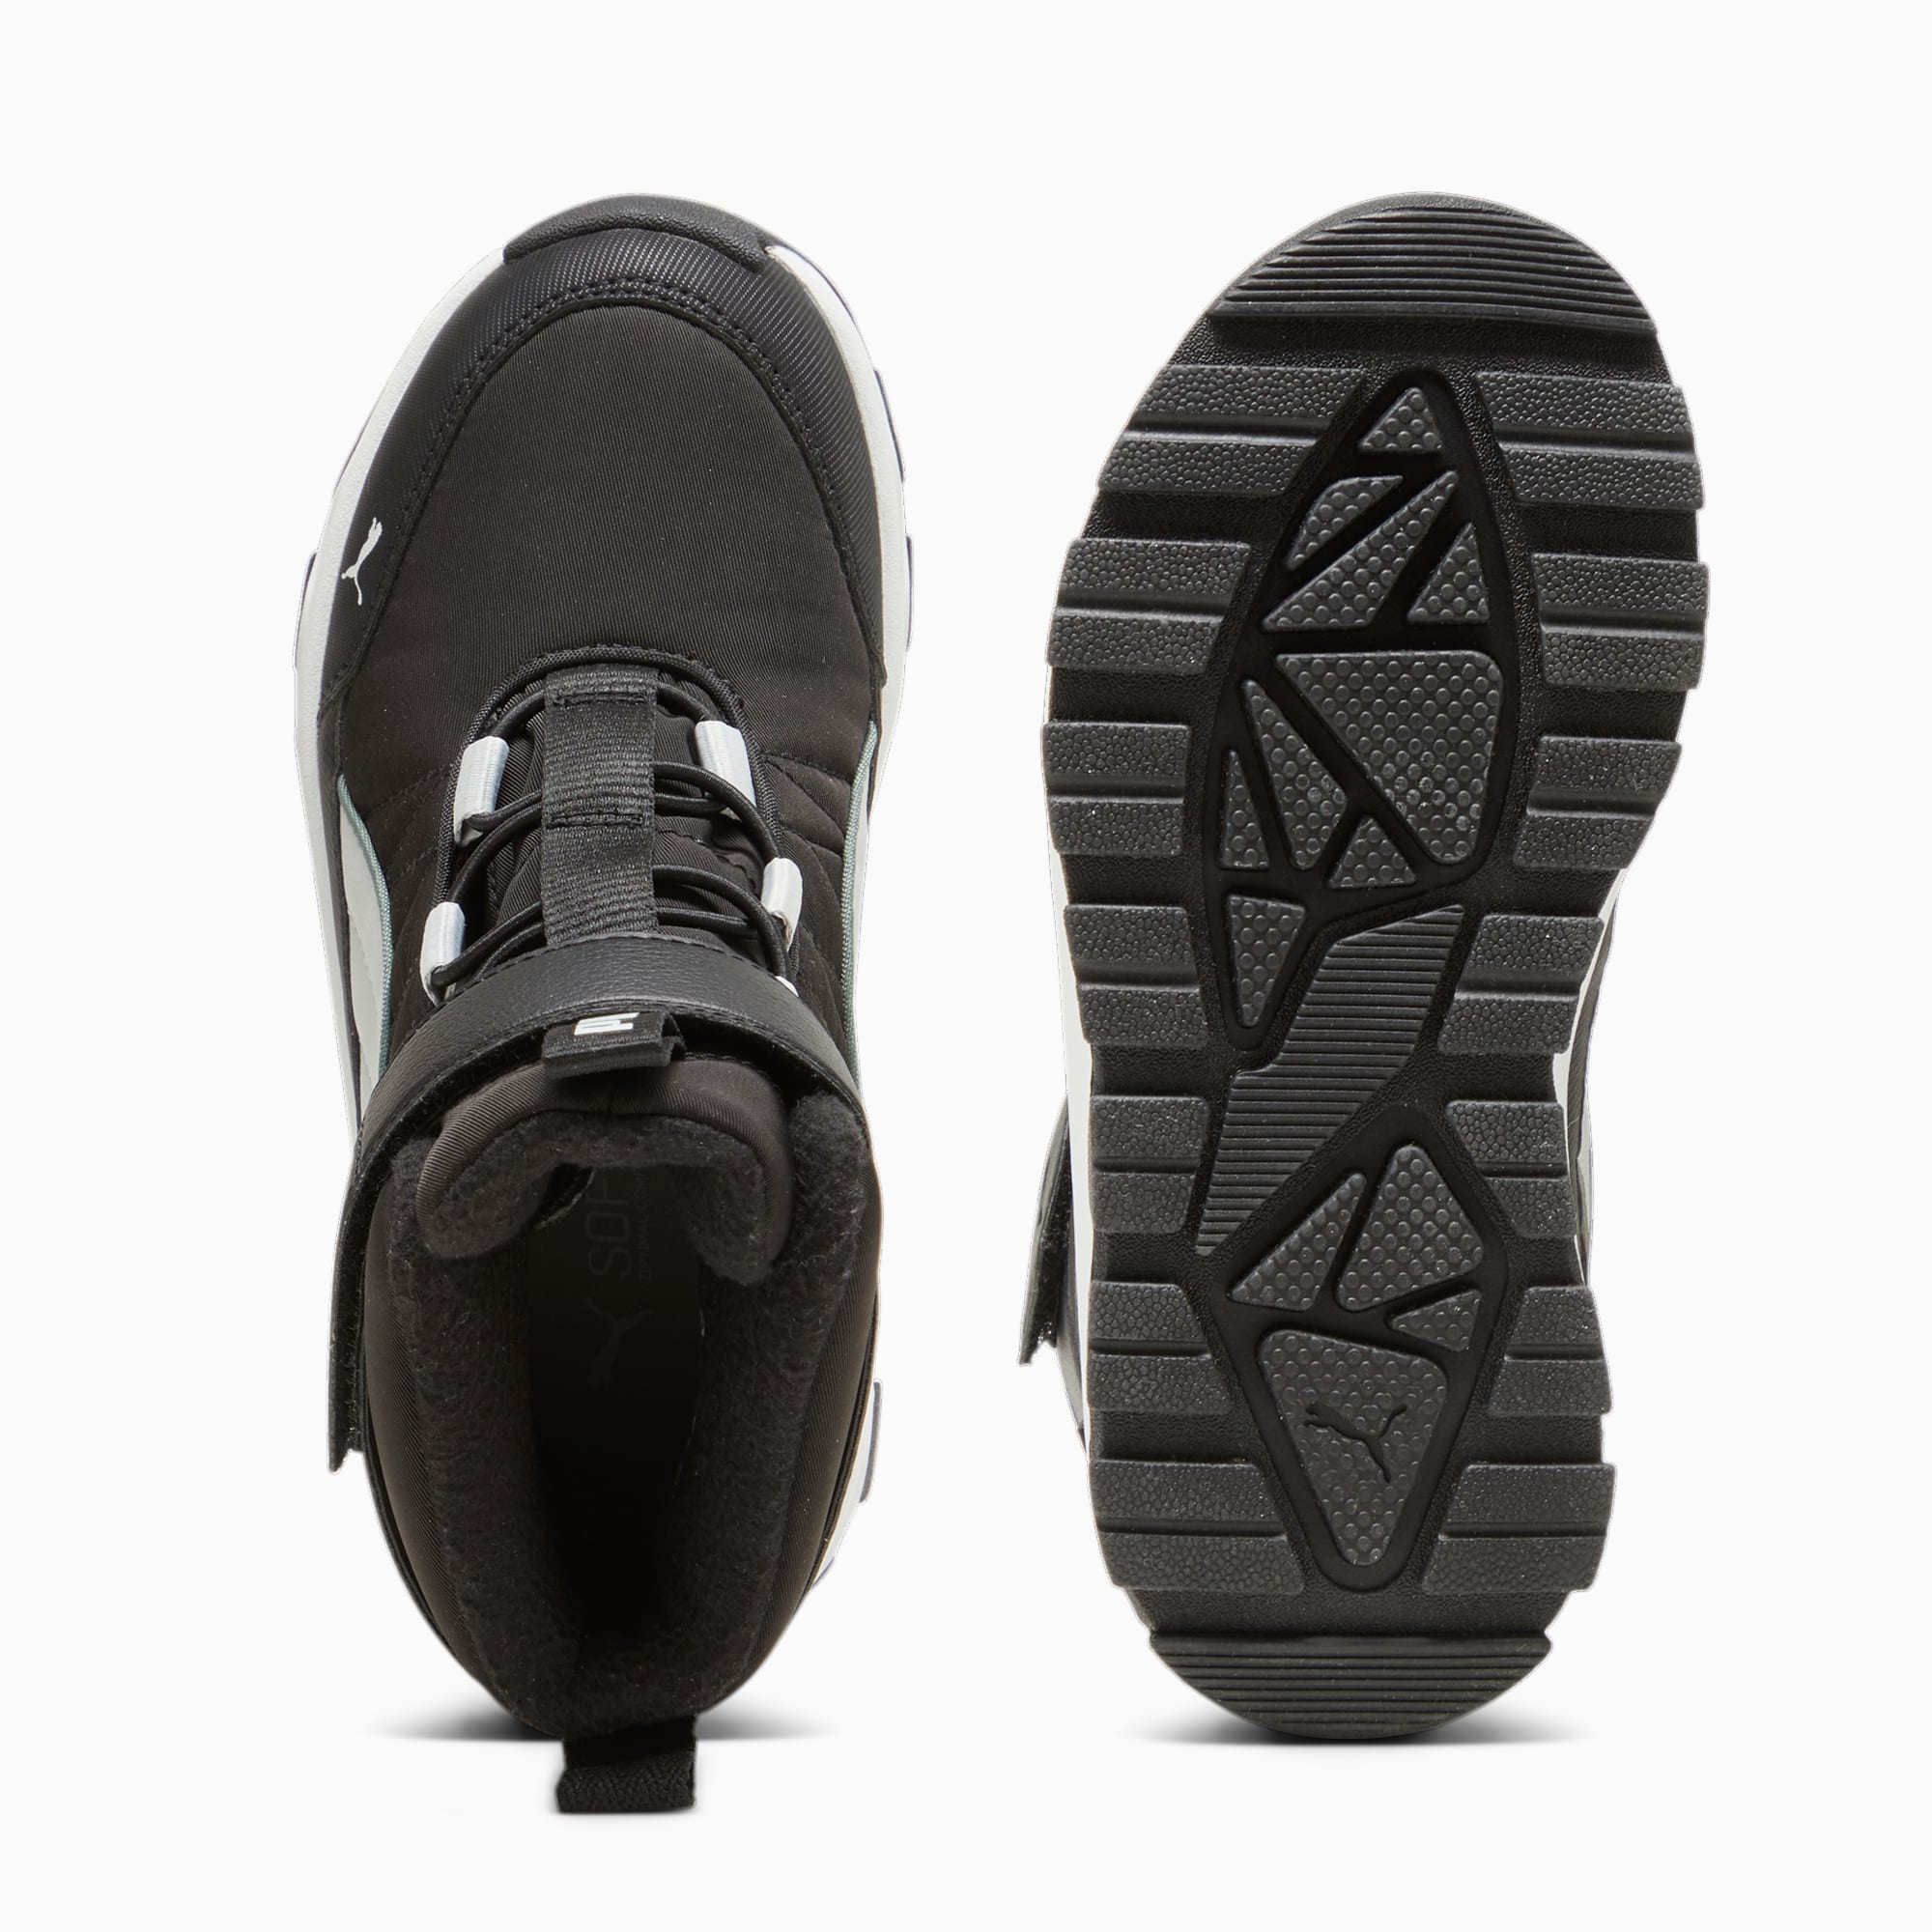 PUMA Evolve Puretex Boots Kinder, Schwarz/Grau, Größe: 33, Schuhe